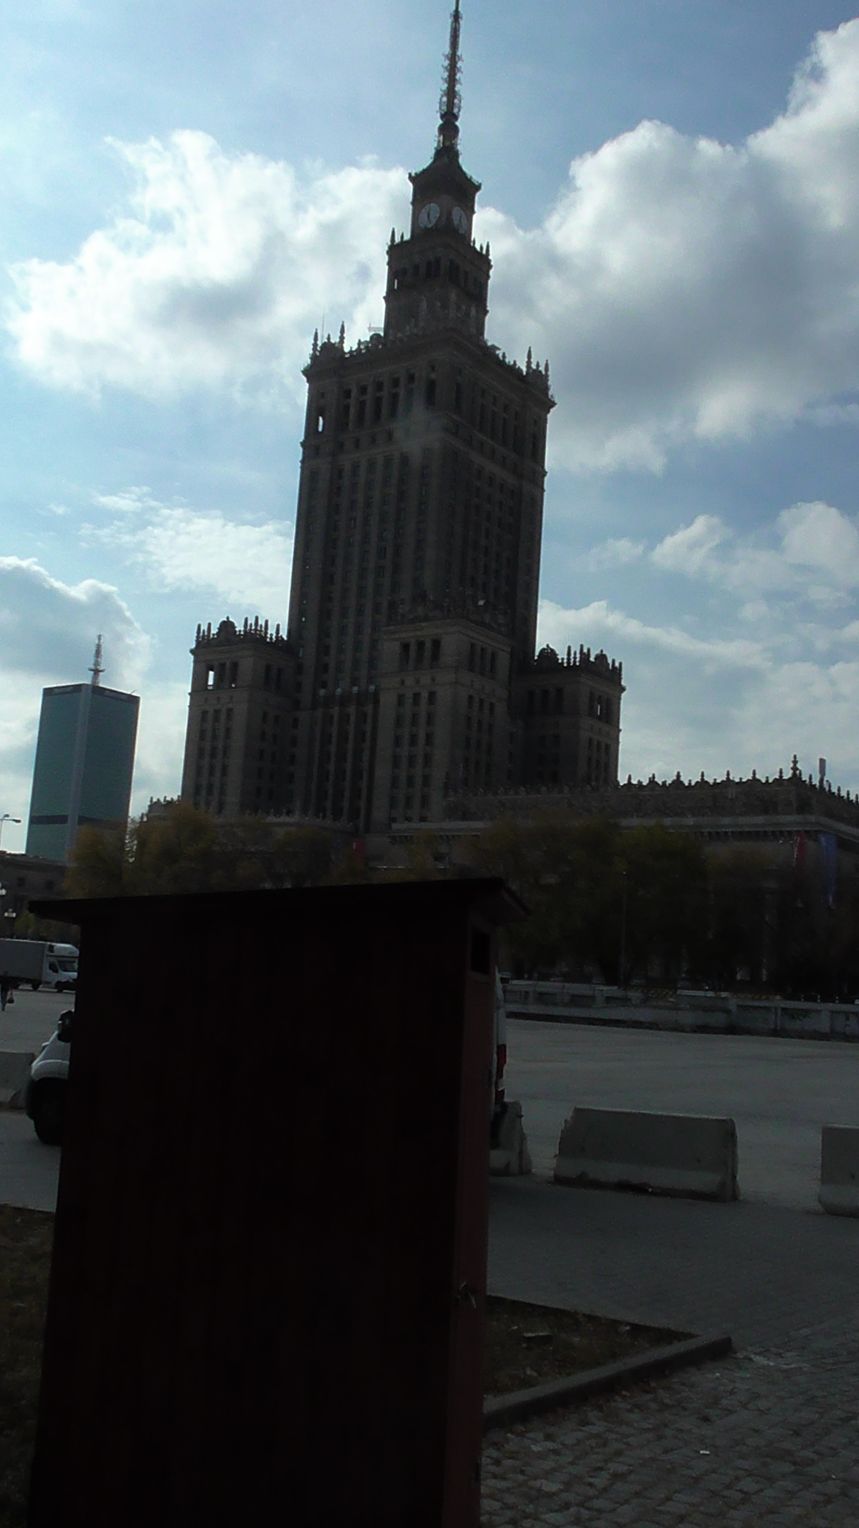 Oto co zobaczyłem wokół Pałacu. Plac Defilad .SRACZ-KIBEL NA SAMYM ŚRODKU ..che,che...Pani Haniu to ta wizytówka Warszawy?